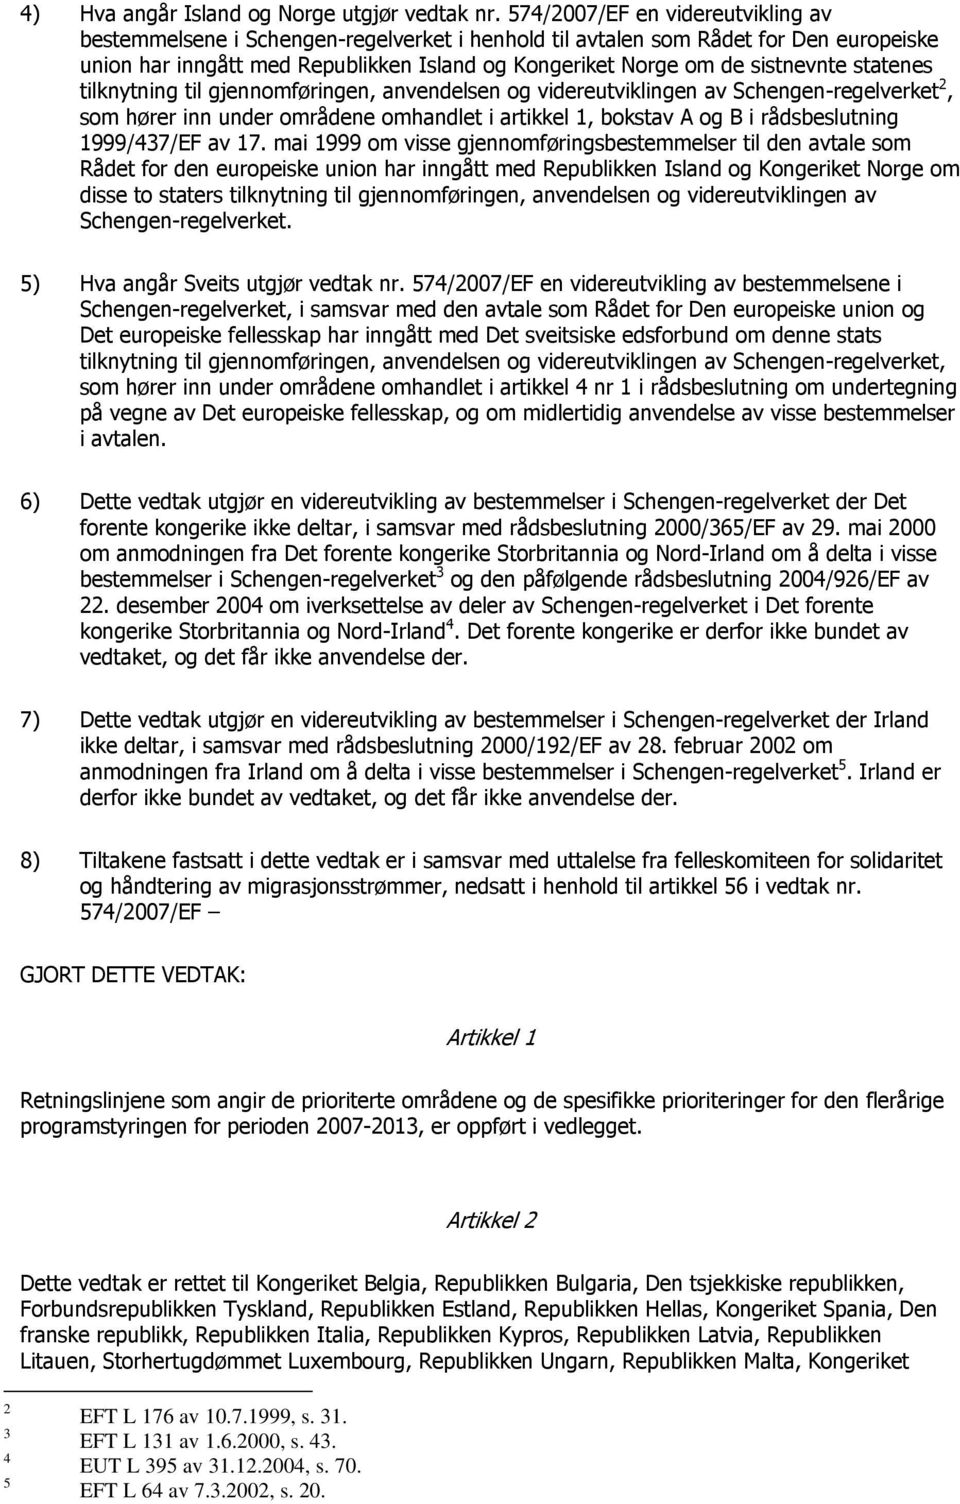 statenes tilknytning til gjennomføringen, anvendelsen og videreutviklingen av Schengen-regelverket 2, som hører inn under områdene omhandlet i artikkel 1, bokstav A og B i rådsbeslutning 1999/437/EF